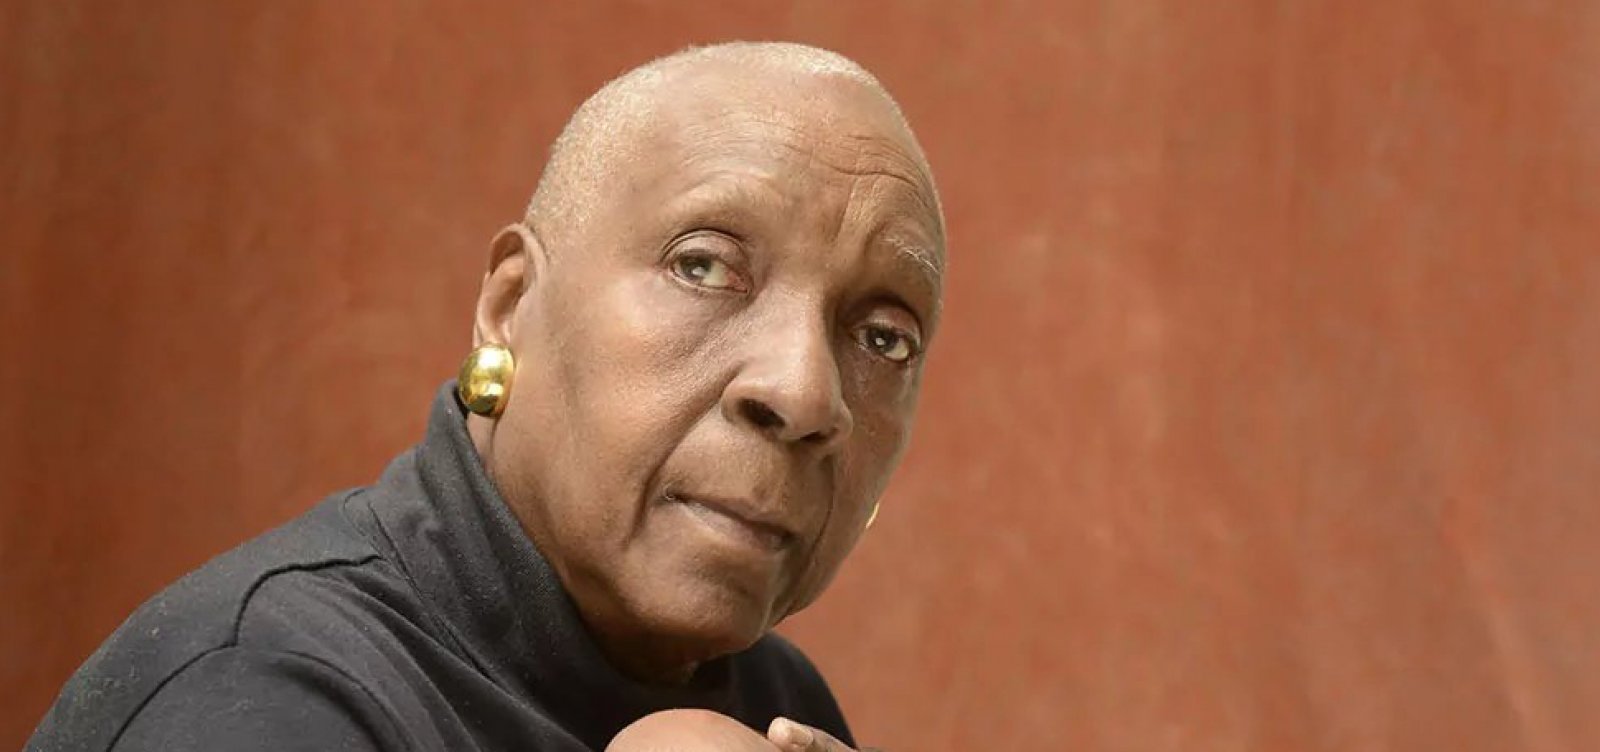 Morre Maryse Condé, grande voz negra da literatura francófona, aos 90 anos